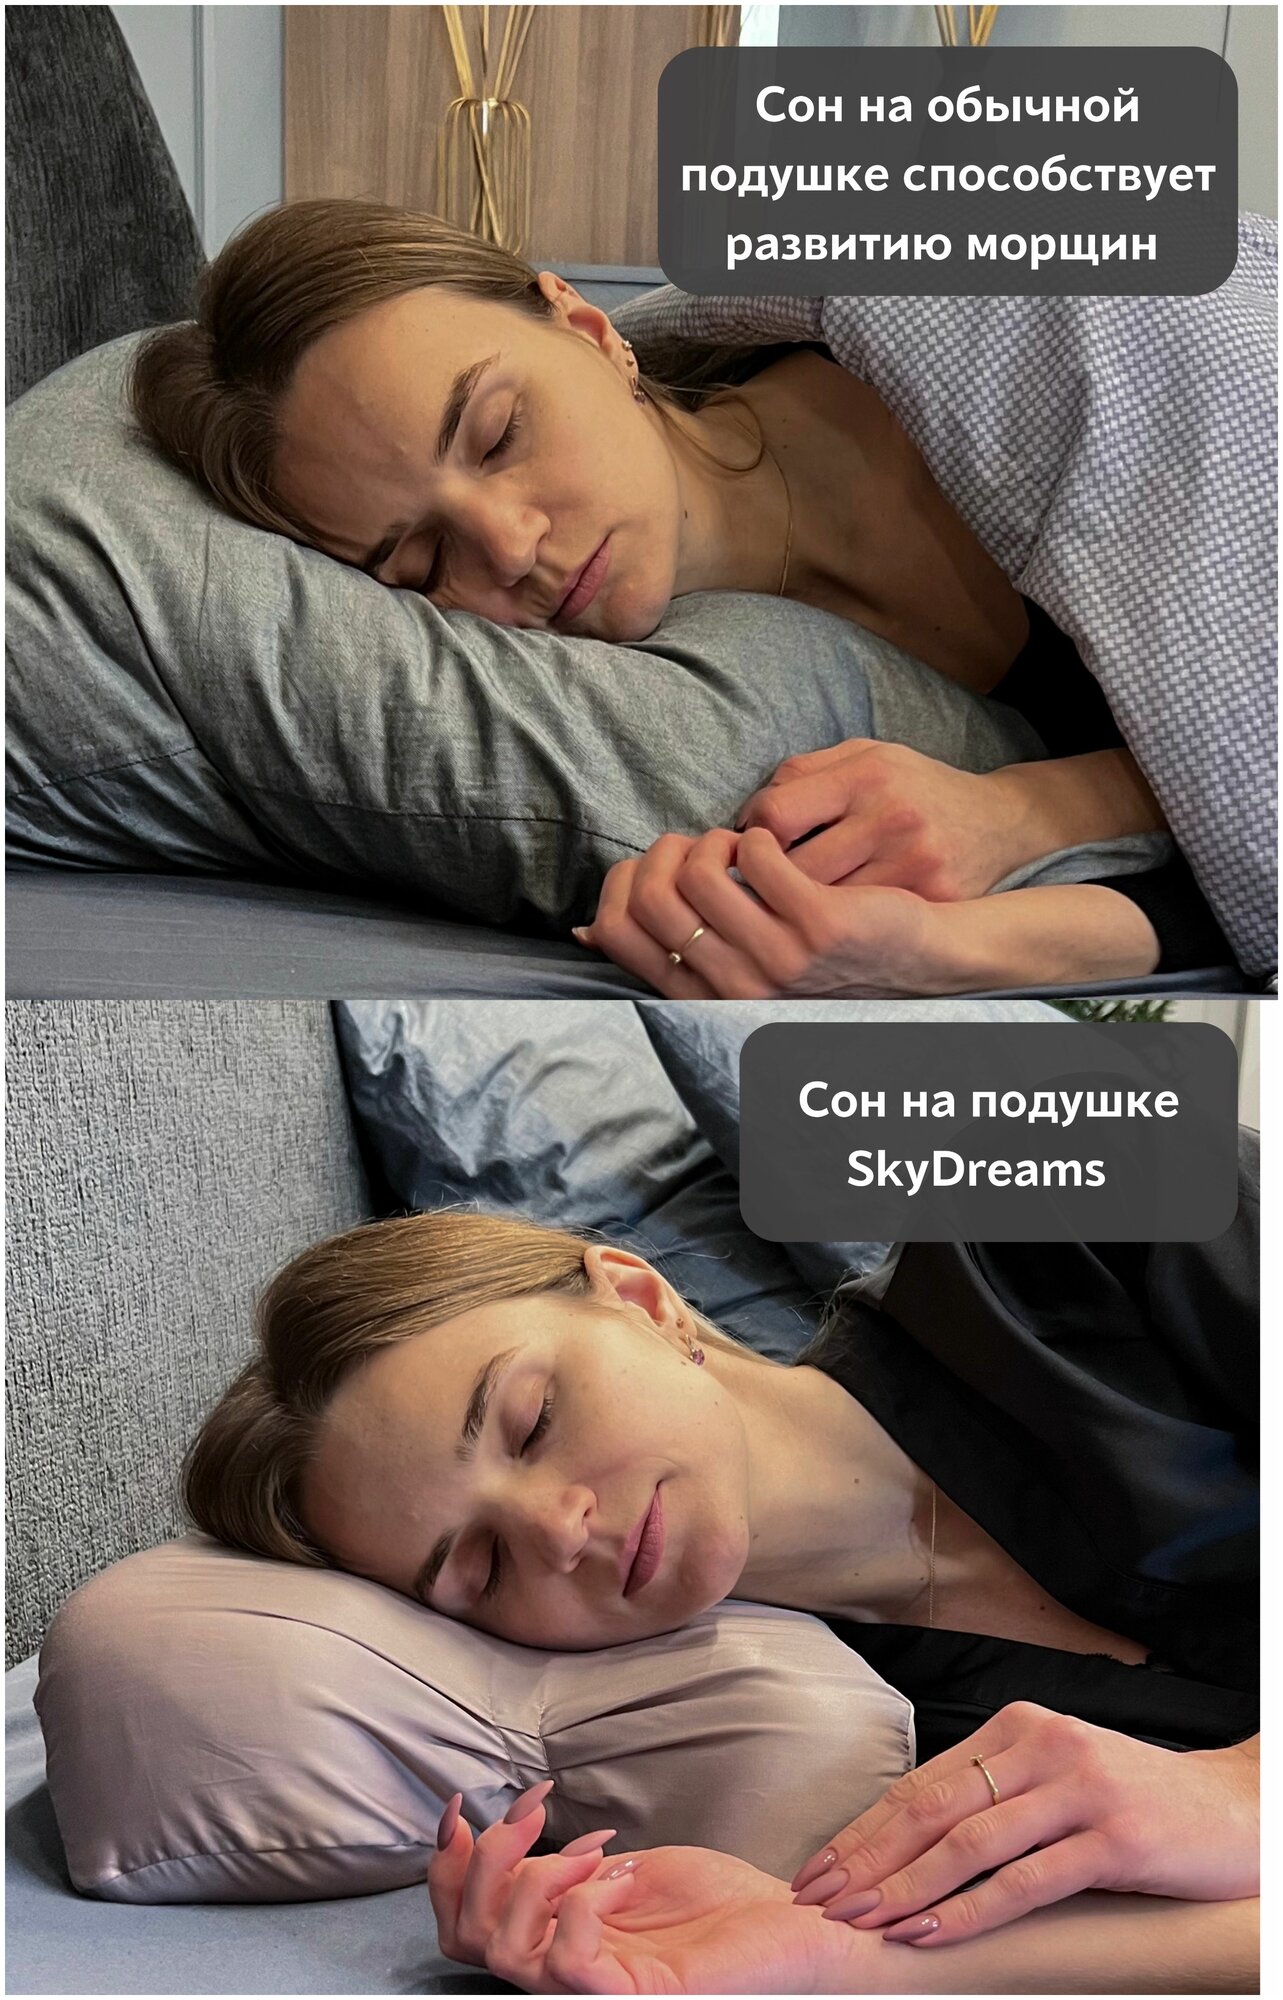 SkyDreams Анатомическая бьюти подушка от морщин сна, высота 10 см, цвет пудрово-розовый - фотография № 2